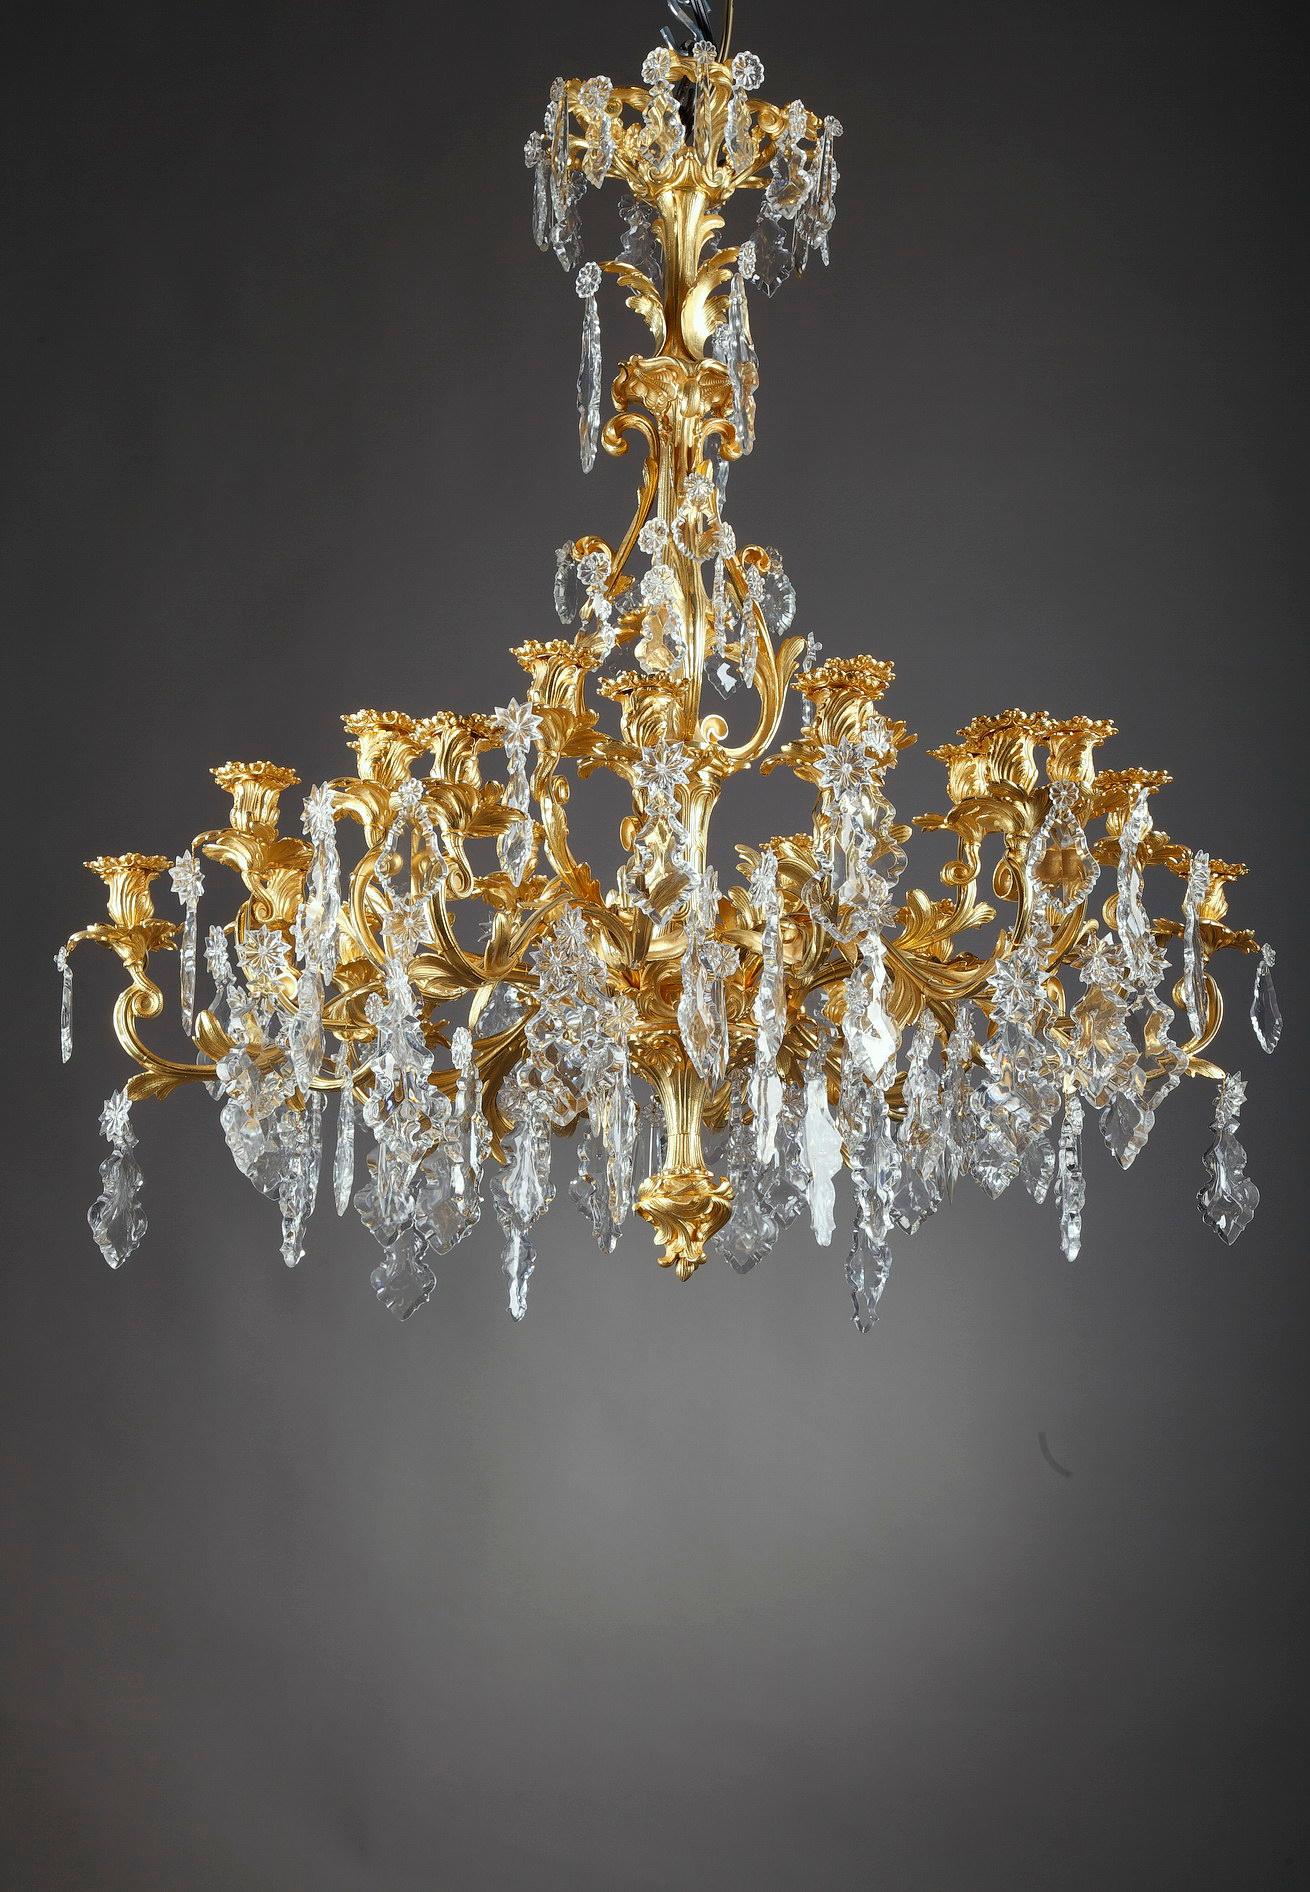 24-Light Chandelier in Louis XV Style 6